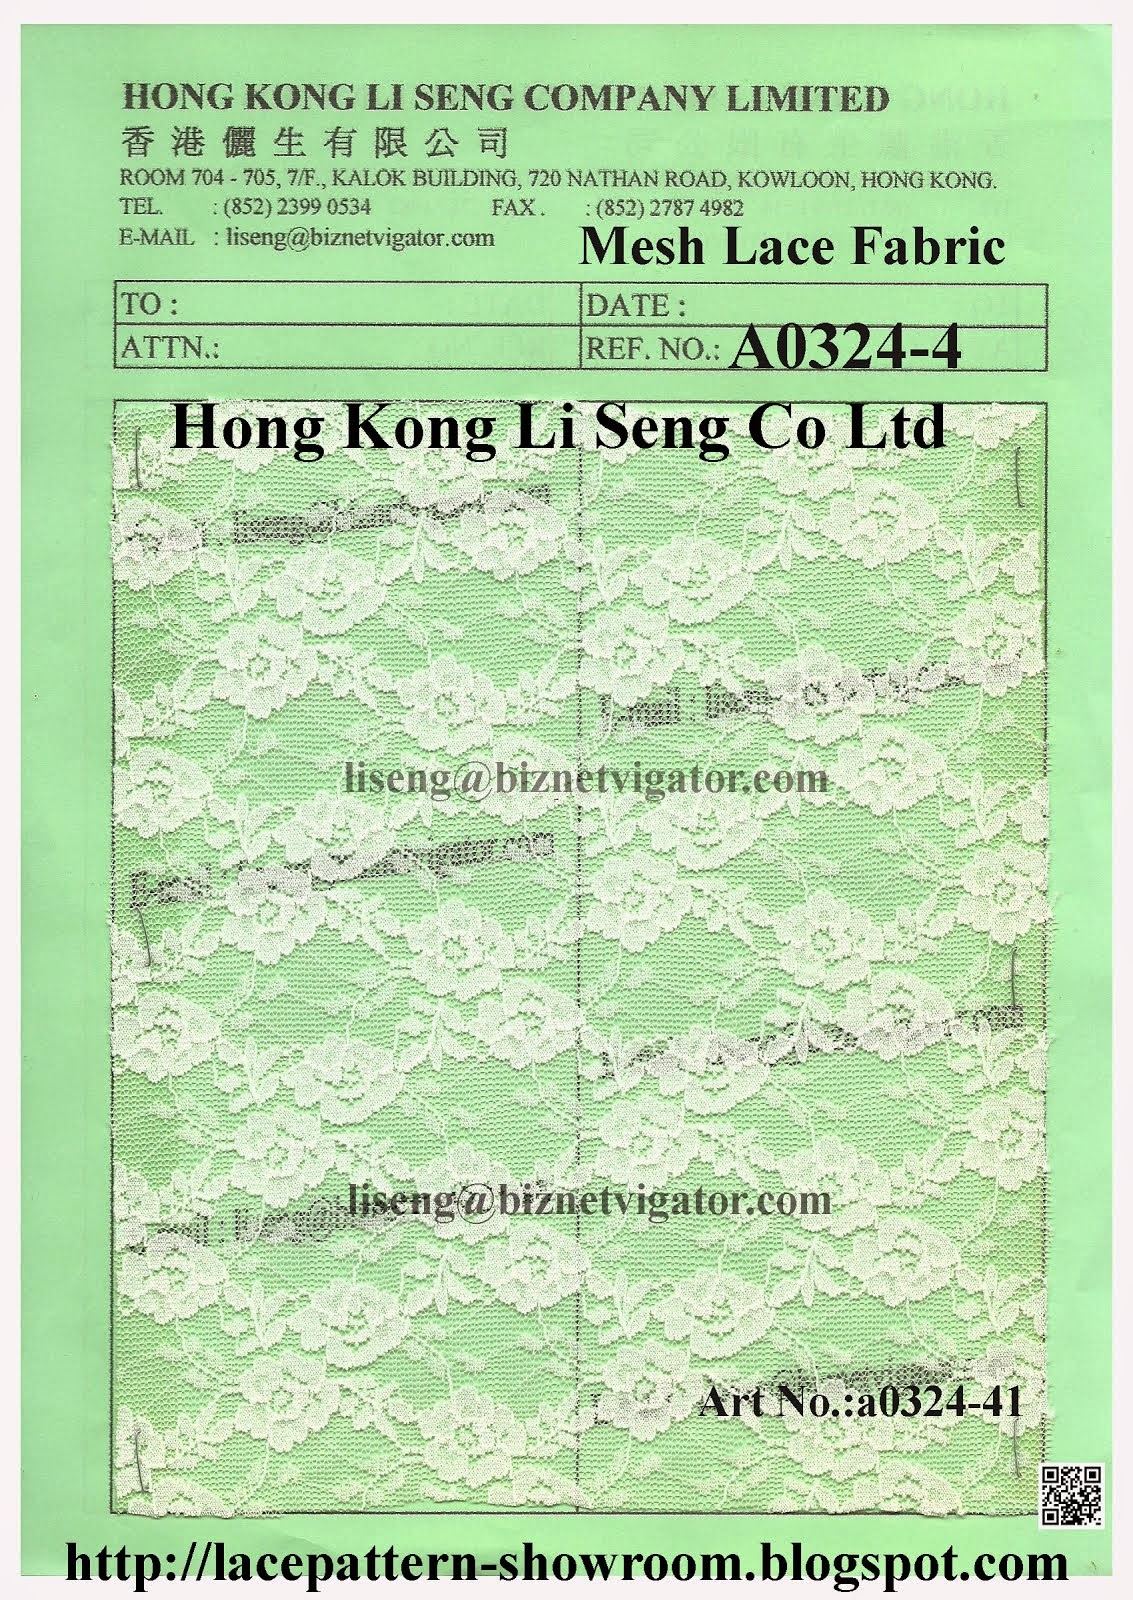 Mesh Lace Fabric Wholesaler Manufacturer and Supplier - Hong Kong Li Seng Co Ltd